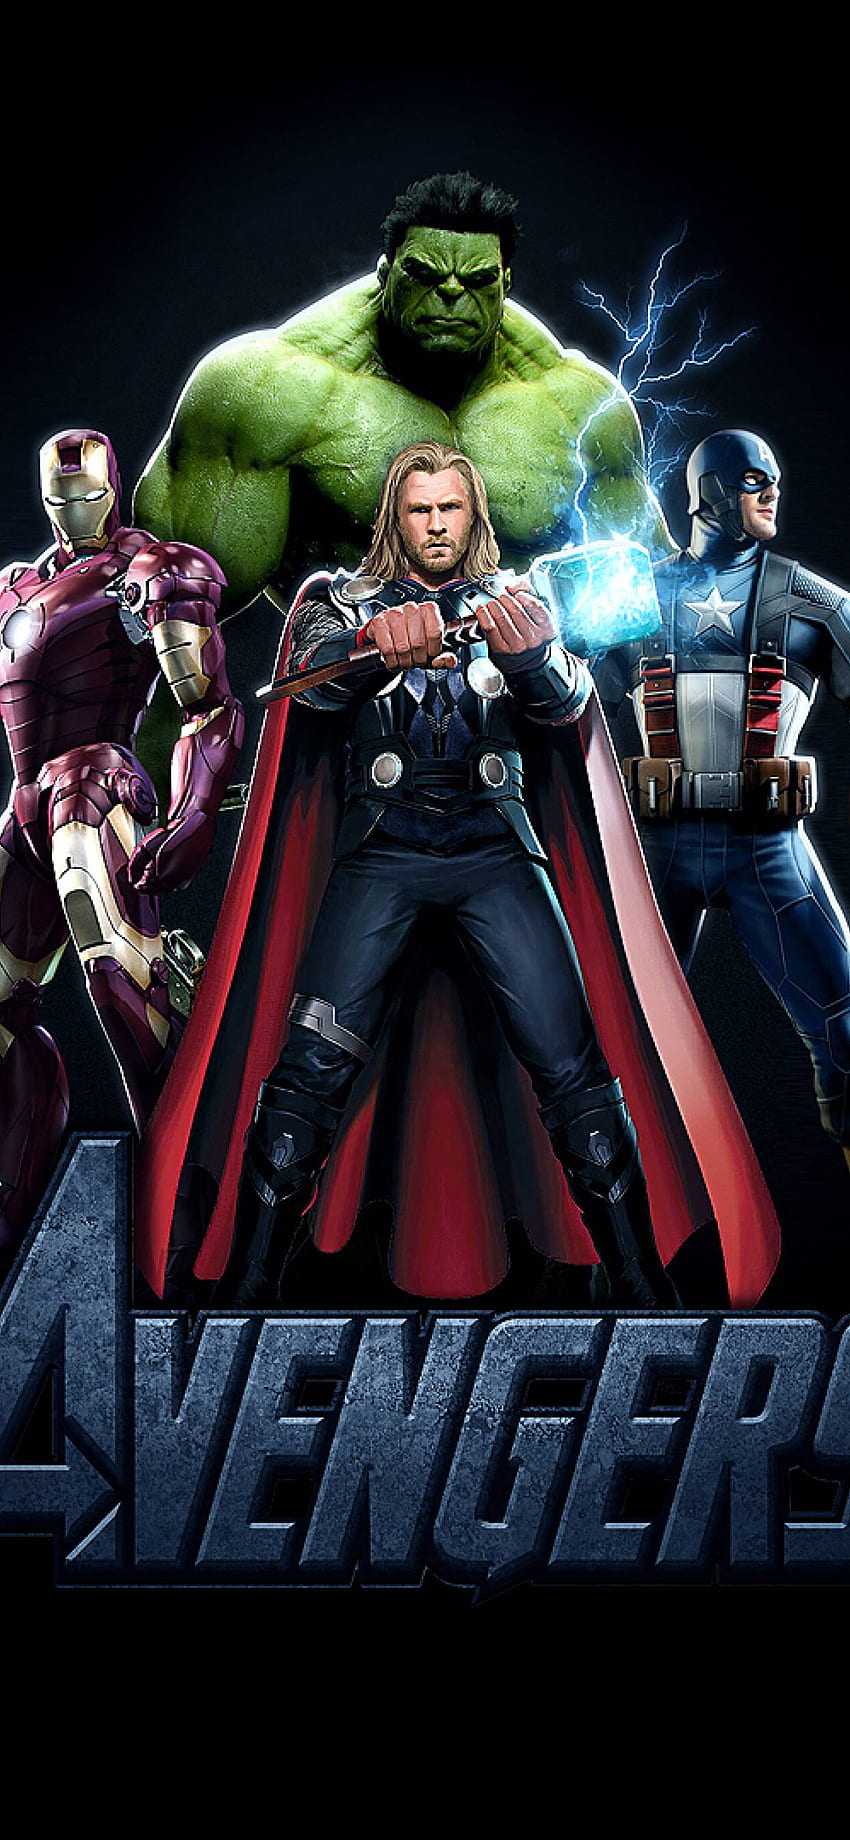 Avengers Endgame Characters 4K Wallpaper 122